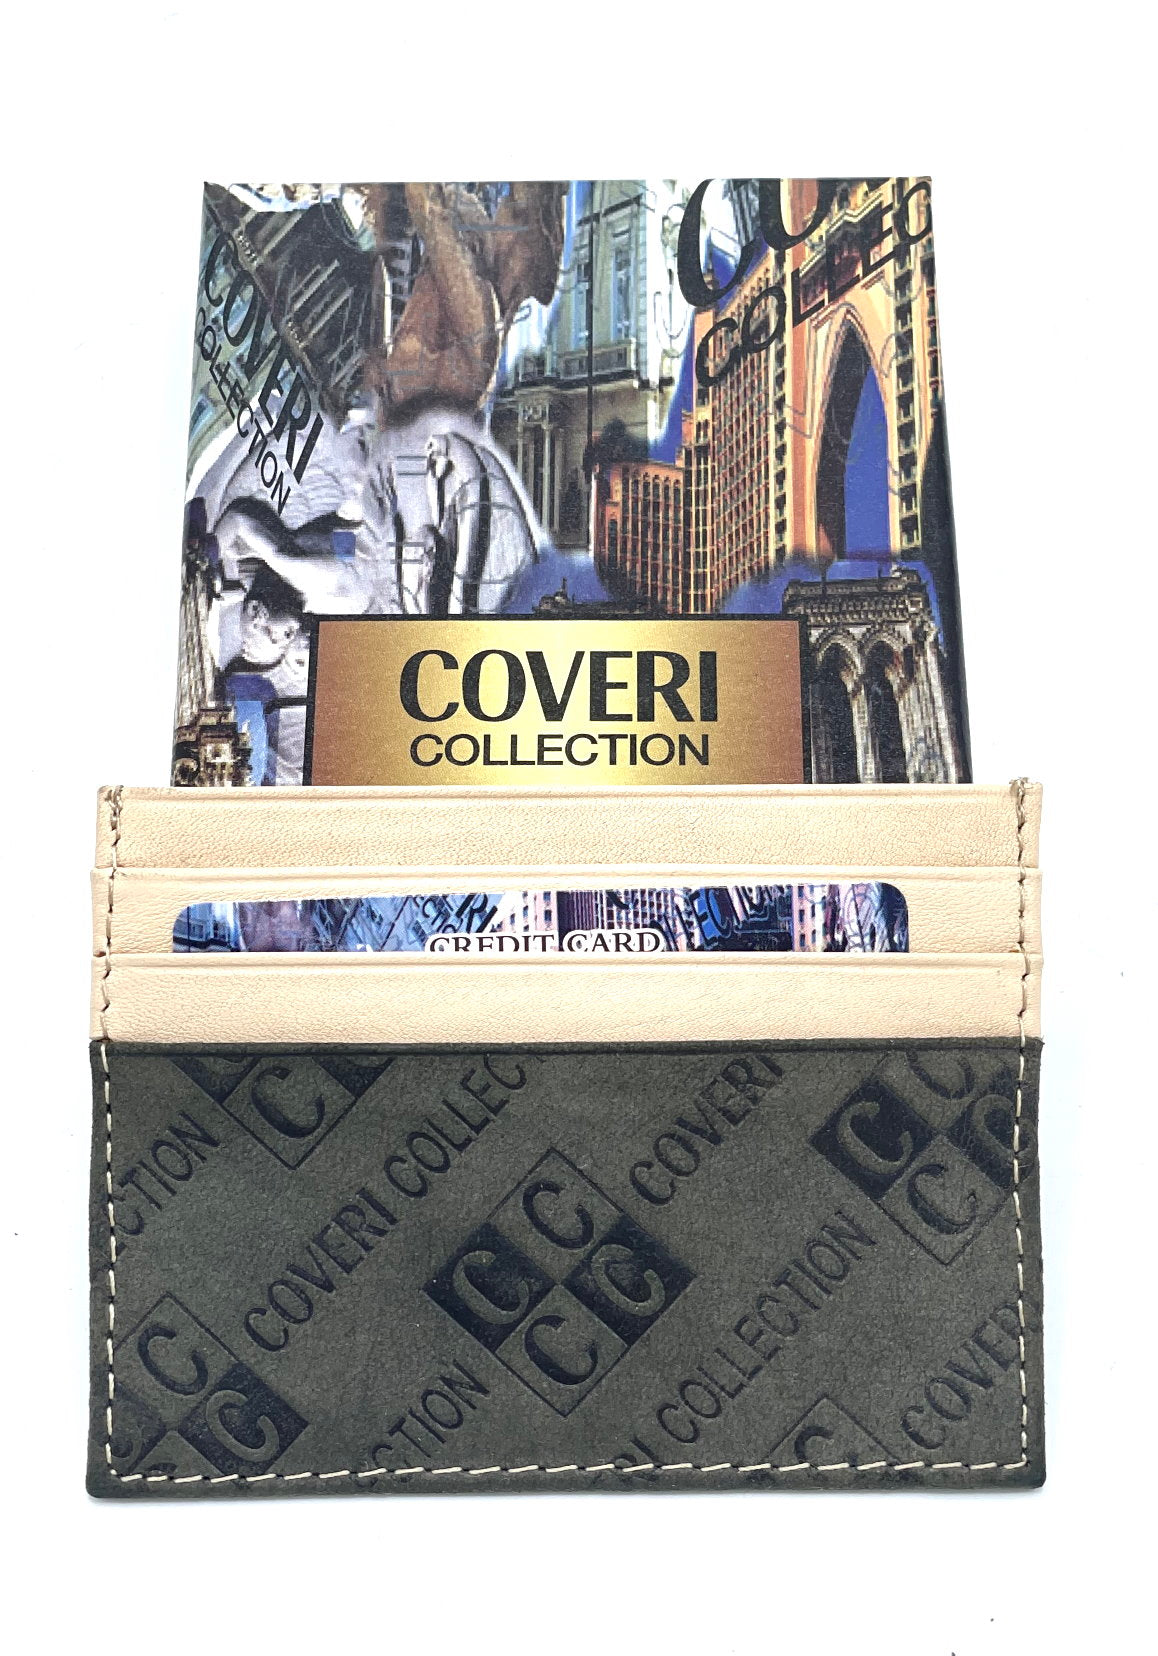 Porta carte in vera pelle per uomo, marchio Coveri Collection, art.  517053.335